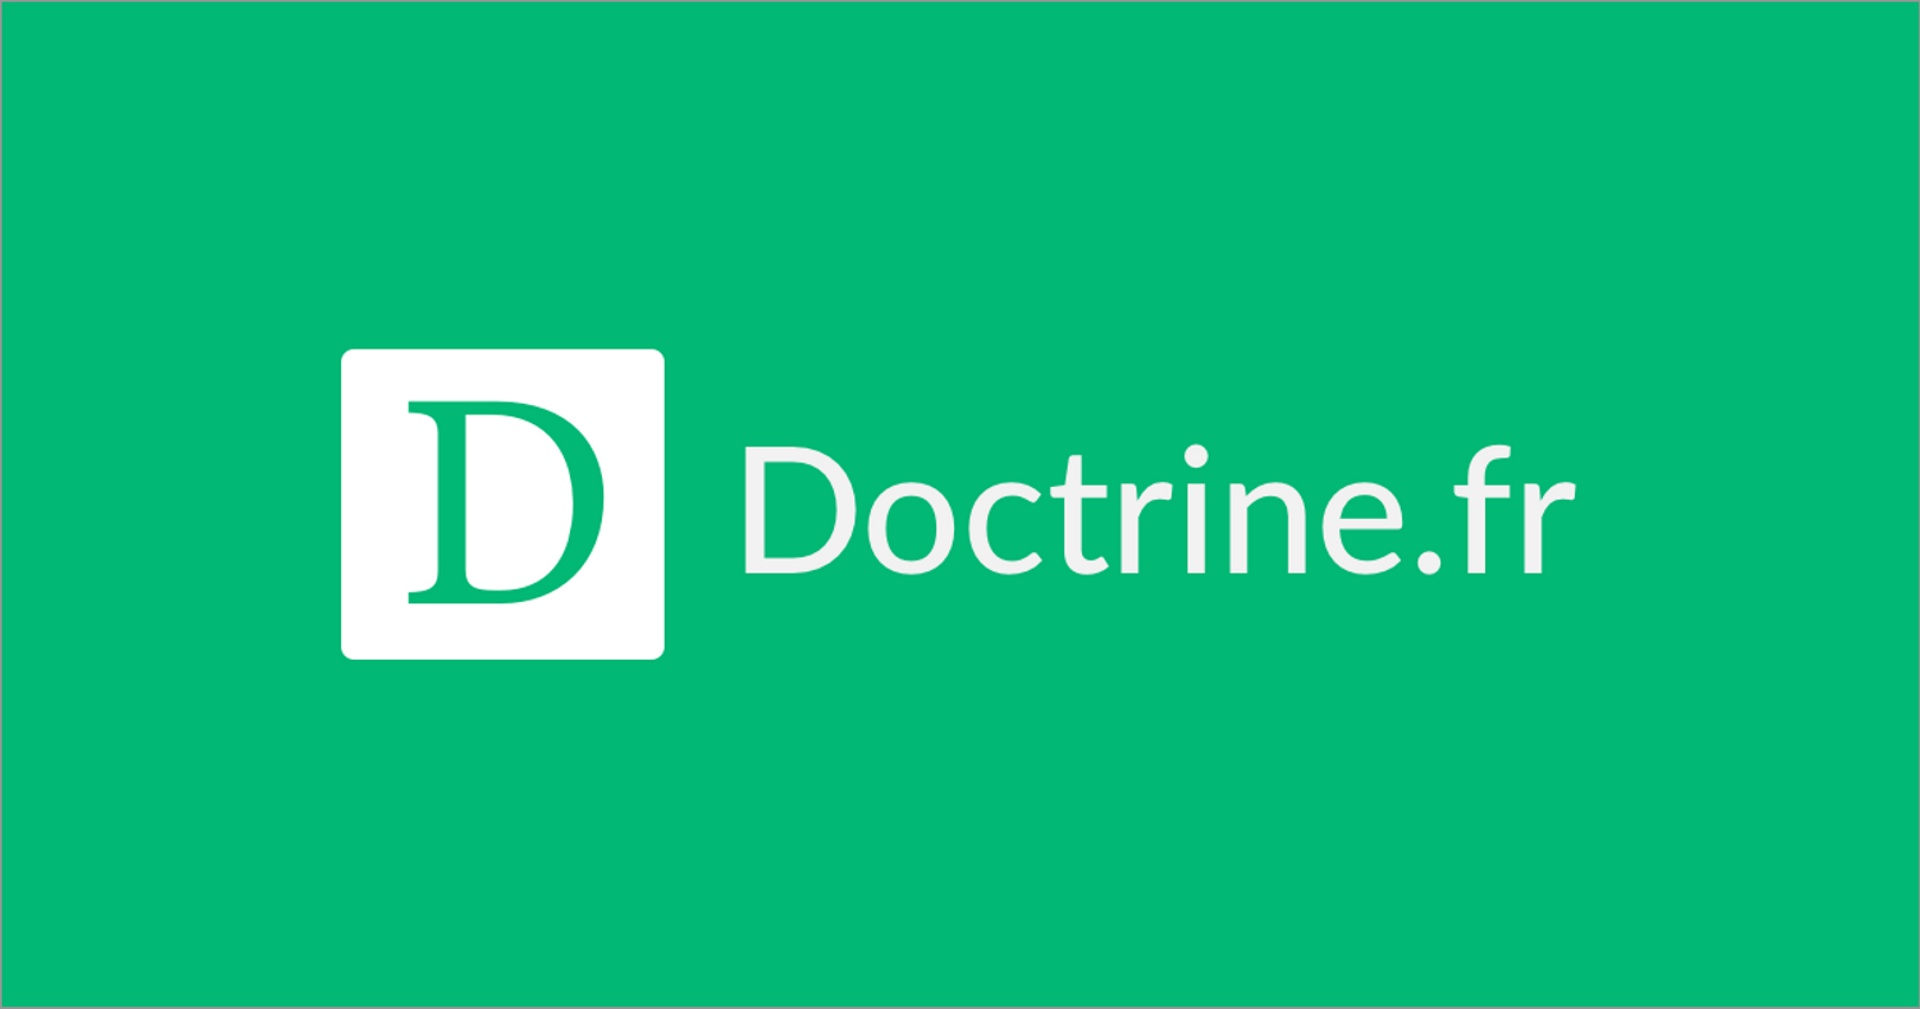 Doctrine 